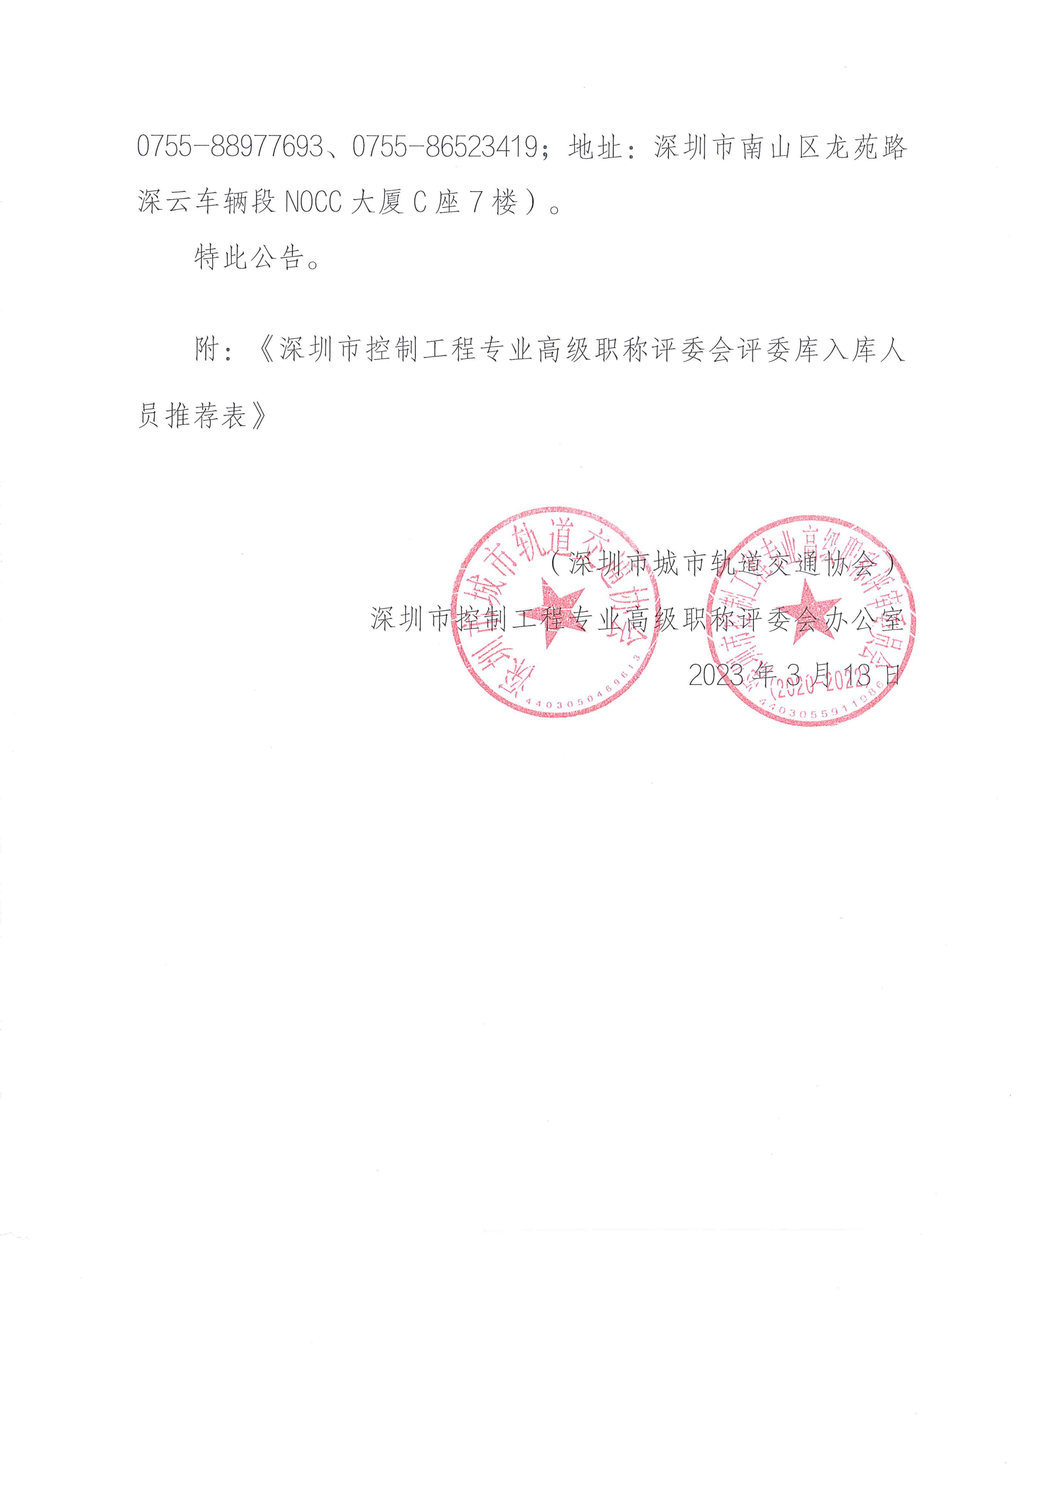 关于征集深圳市控制工程专业高级职称评审委员会评委的公告_03.png